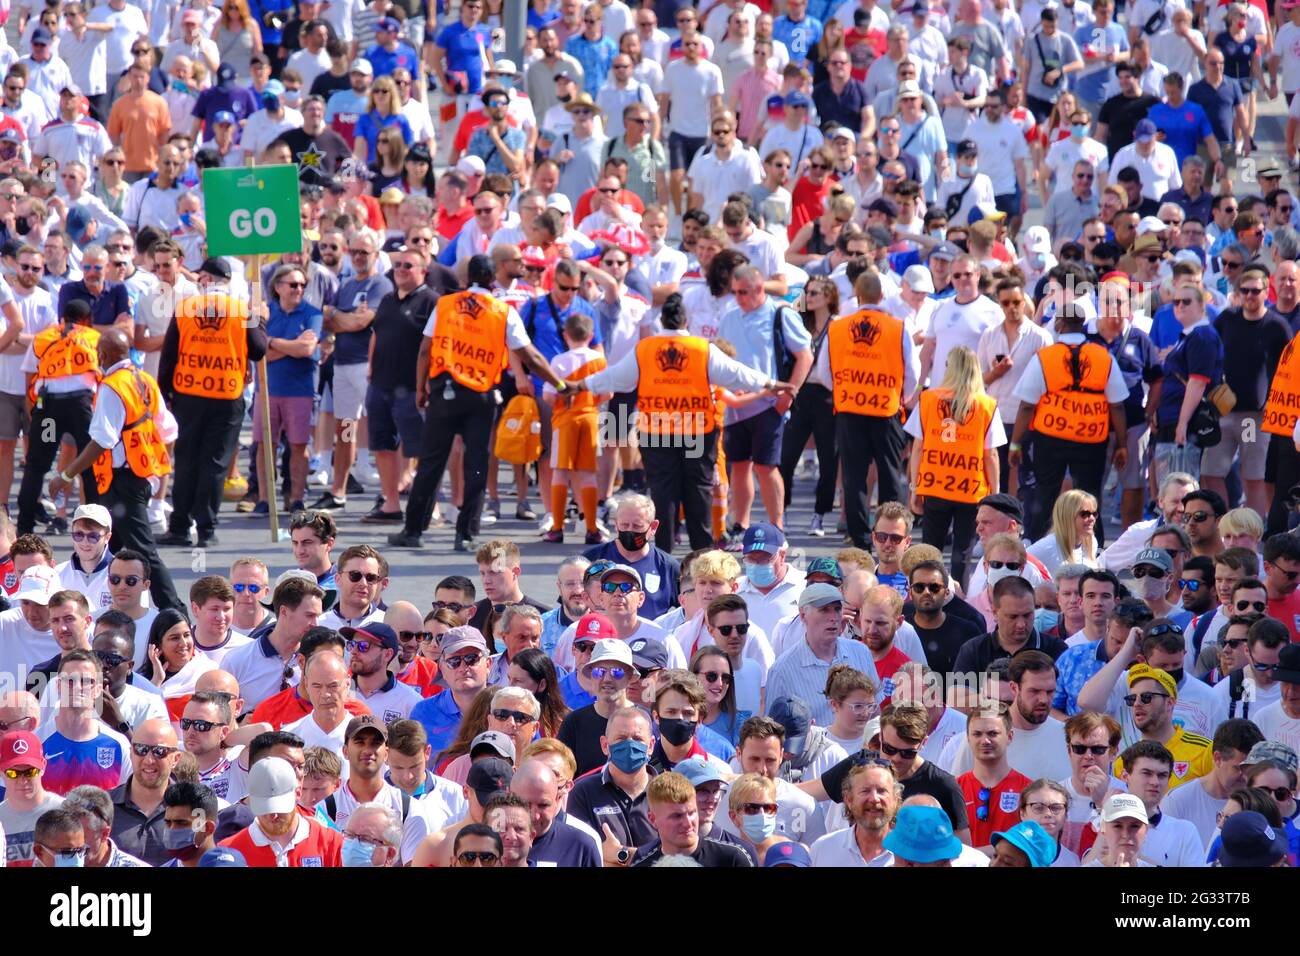 Stewards bilden eine menschliche Barriere, um Menschenmengen zu regulieren, die nach dem Gruppenspiel „EM 2020 England gegen Kroatien“ in die U-Bahn-Station Wmebley Park eindringen. Stockfoto